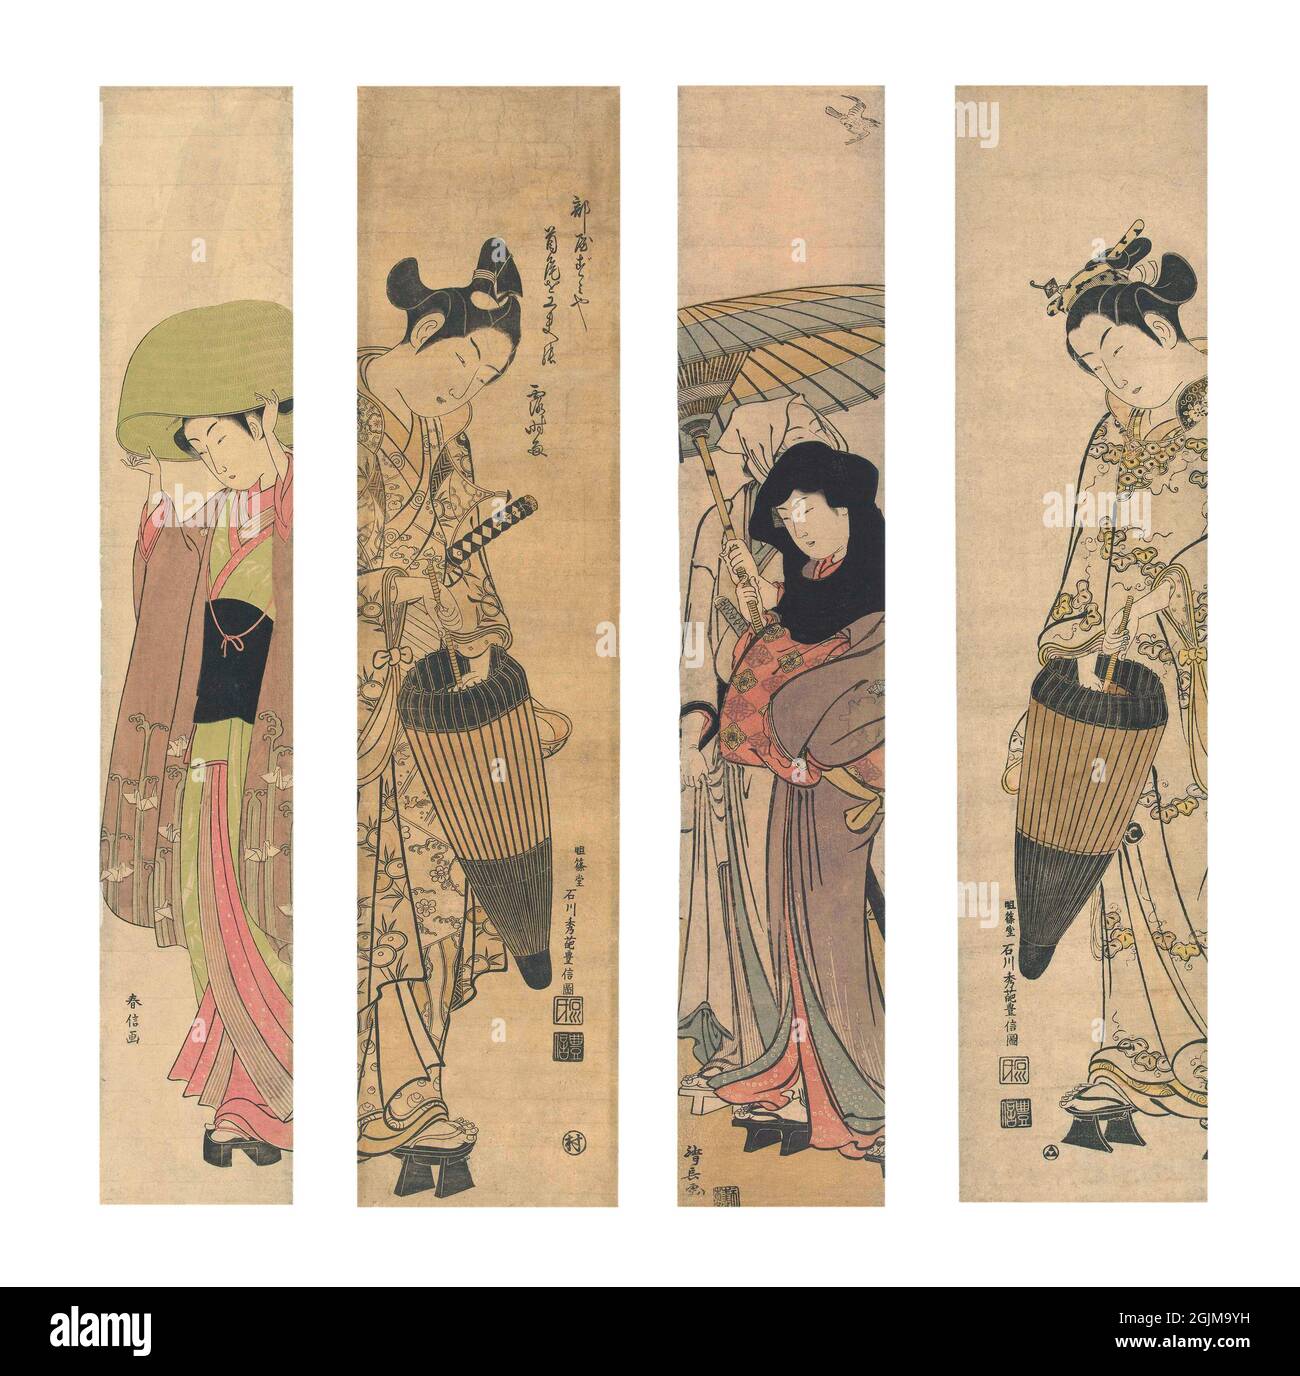 Sélection de 4 boiseries peintes au Japon de gauche à droite : 1. Fille portant un chapeau de paille, portant un kimono avec un motif de grues à l'origami et des vagues stylisées.= (1765-70) 2. Jeune homme en imperméable à motifs floraux stylisés, avec épée, ouvrant un parapluie orienté vers le bas (1740-45) 3. Ochiya et son mari Hanbei, regardant un coucou, sous un parapluie. (1780 - 1784) 4. Femme en imperméable avec motif papillon stylisé, ouverture vers le bas, parasol. Conception optimisée et améliorée unique de quatre illustrations japonaises de coupe de bois du XVIIIe siècle. Banque D'Images